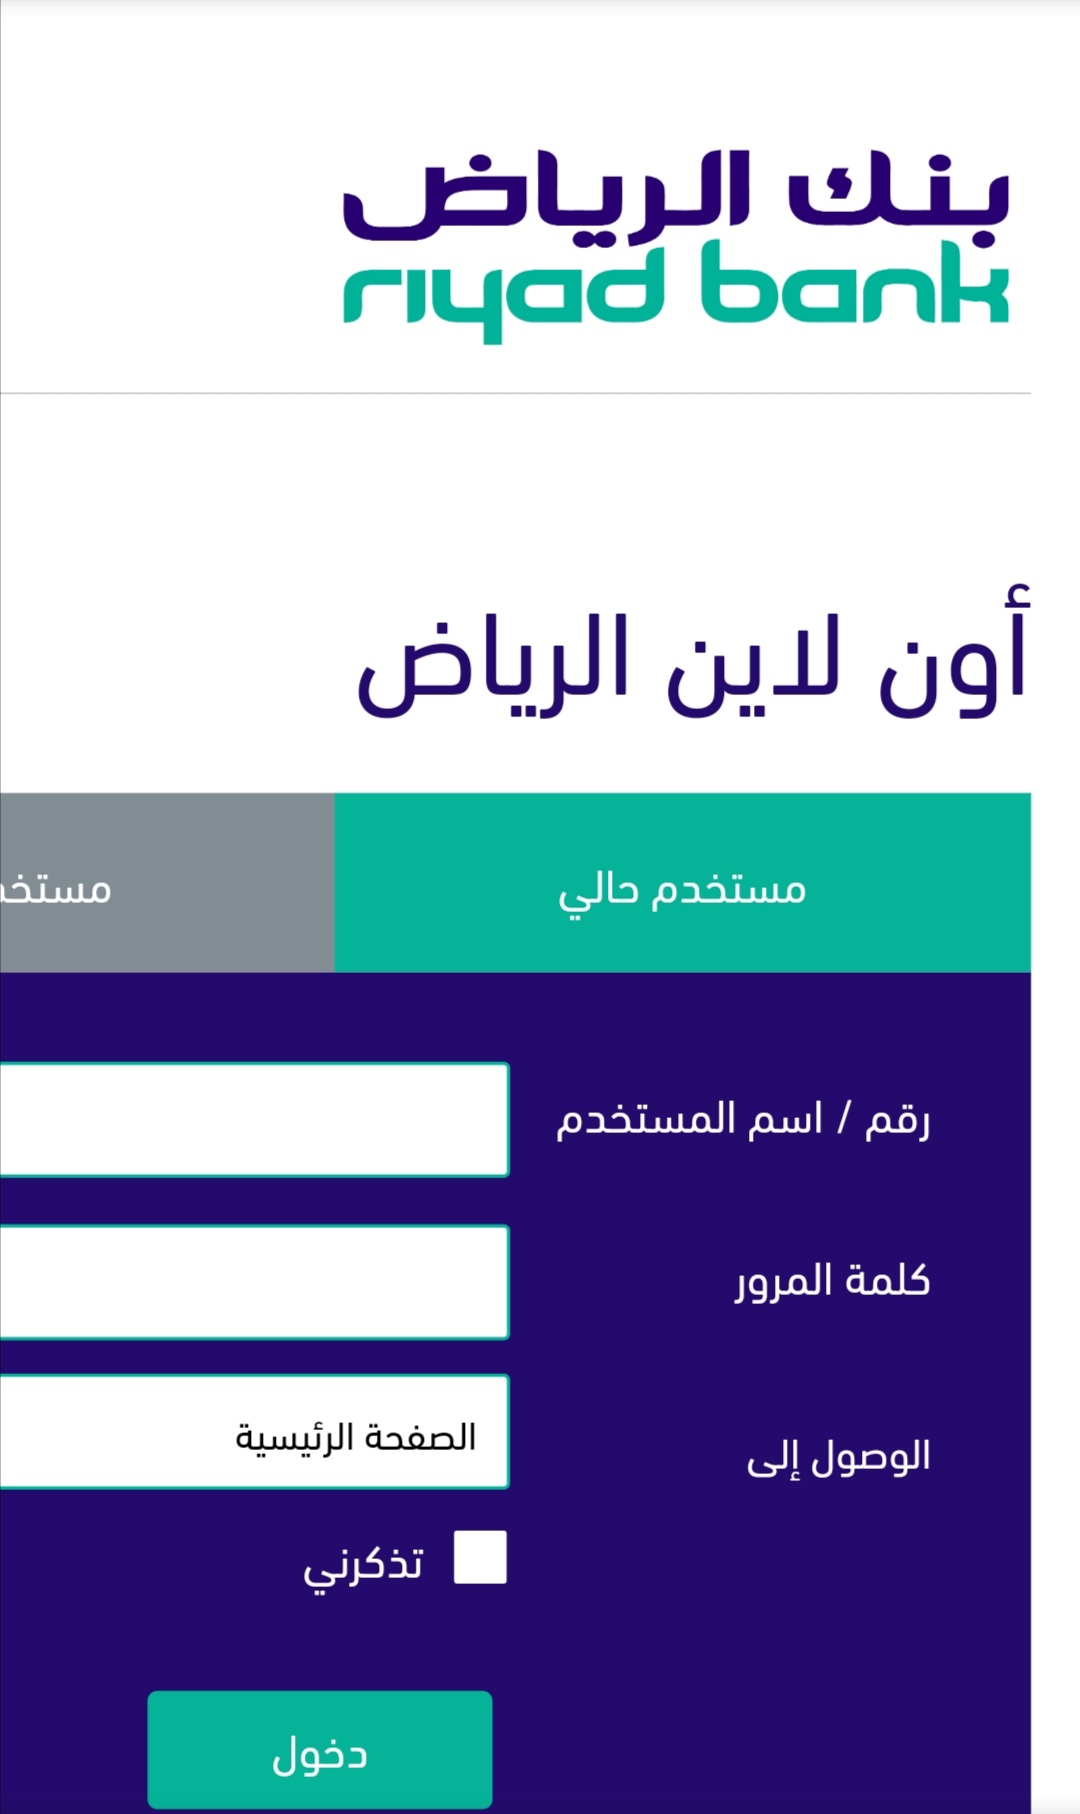 خطوات تحديث بيانات بنك الرياض أون لاين